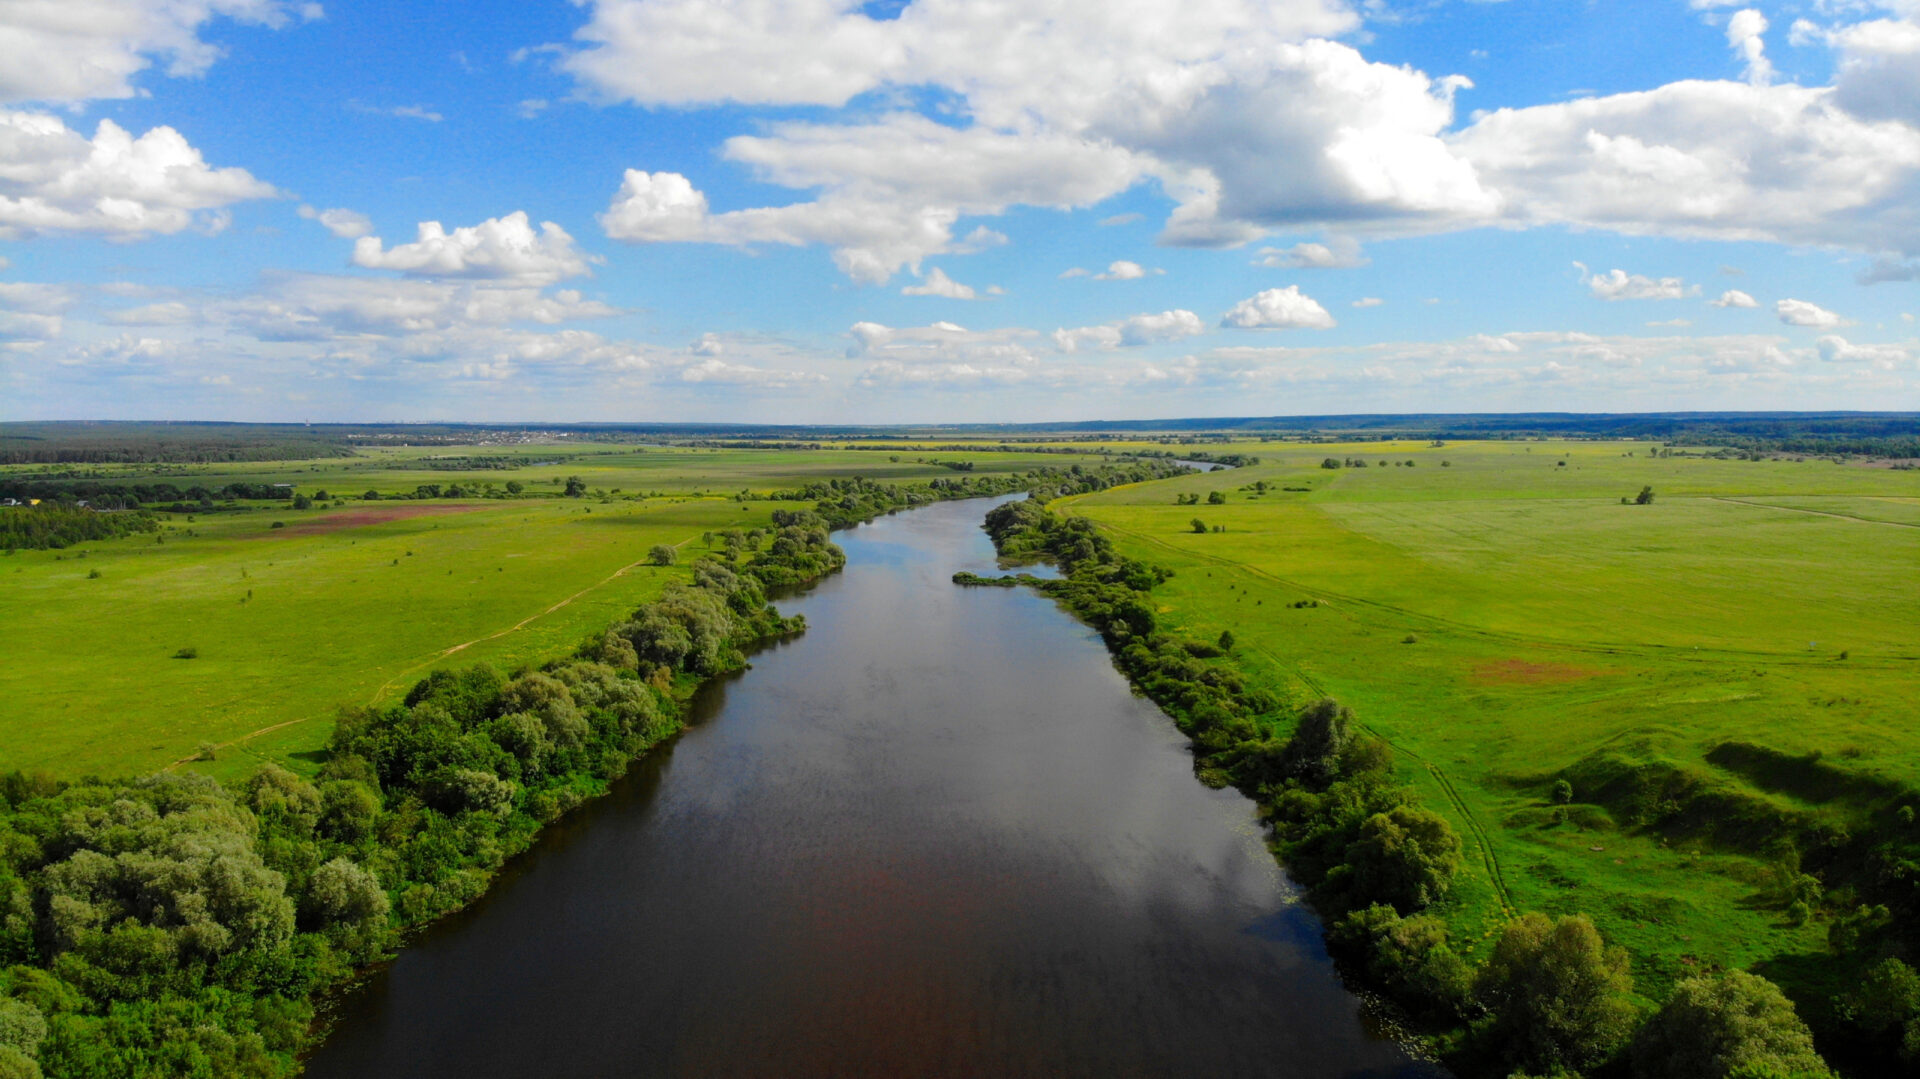 Река Угра Калуга